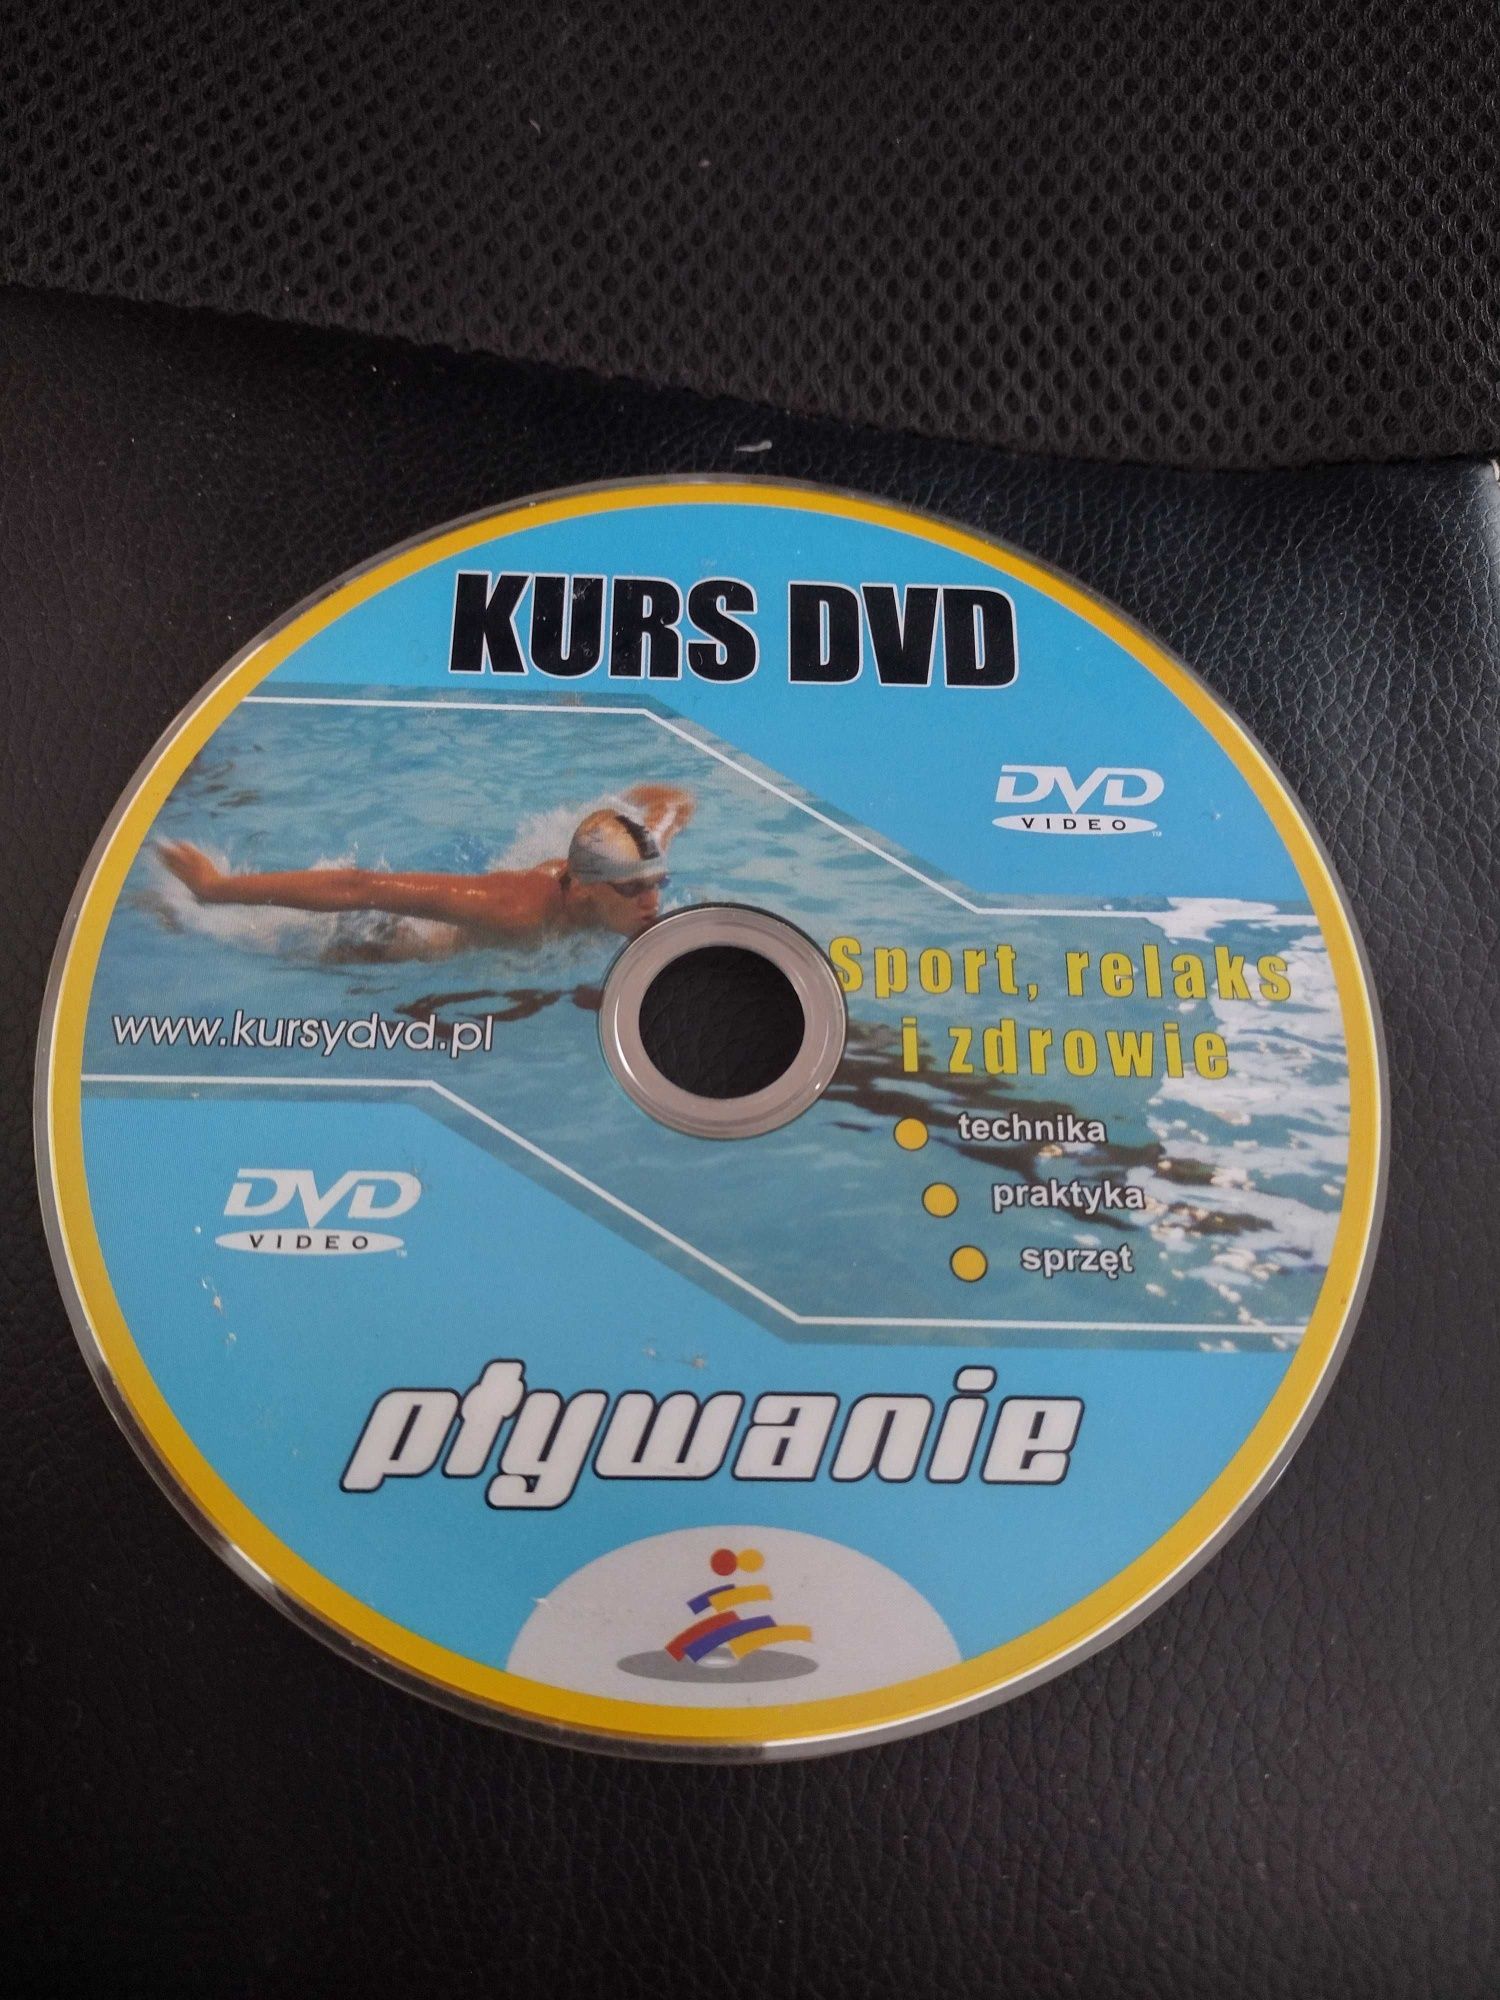 Kurs pływanie DVD + kurs wizażu dvd